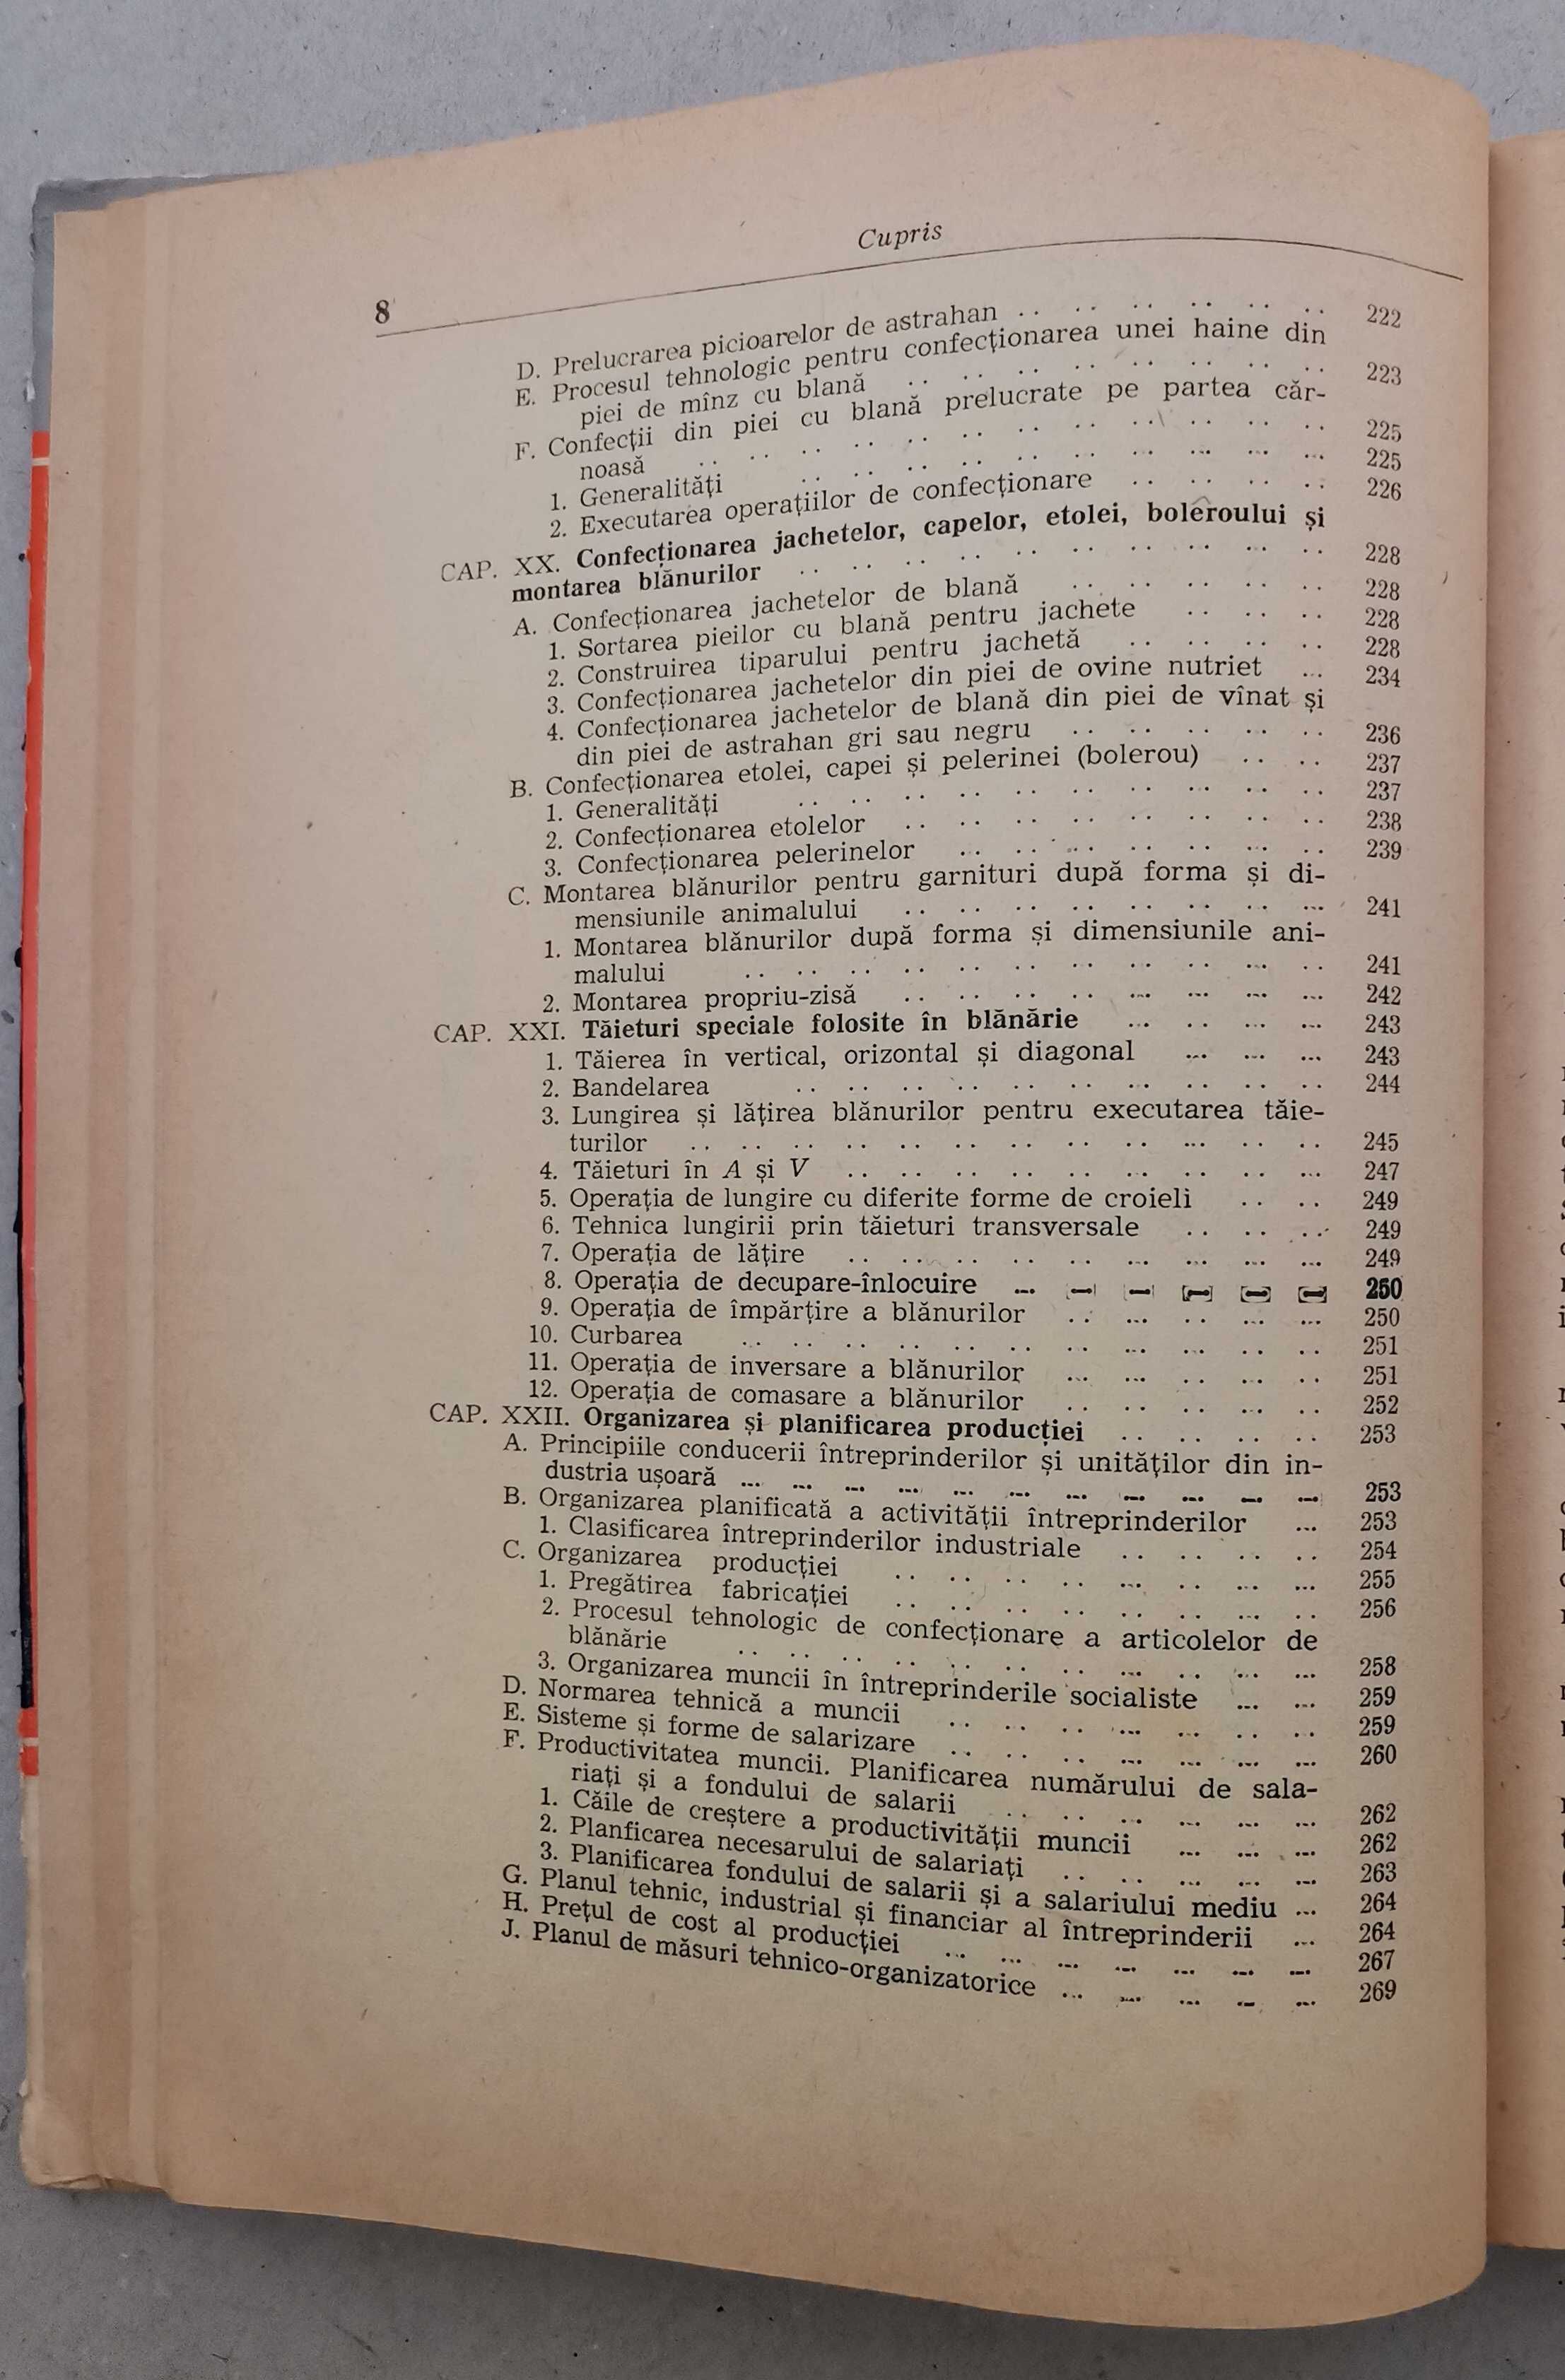 Petrache Costache - Manualul Blanarului, 1970
Carte pielarie tabacire